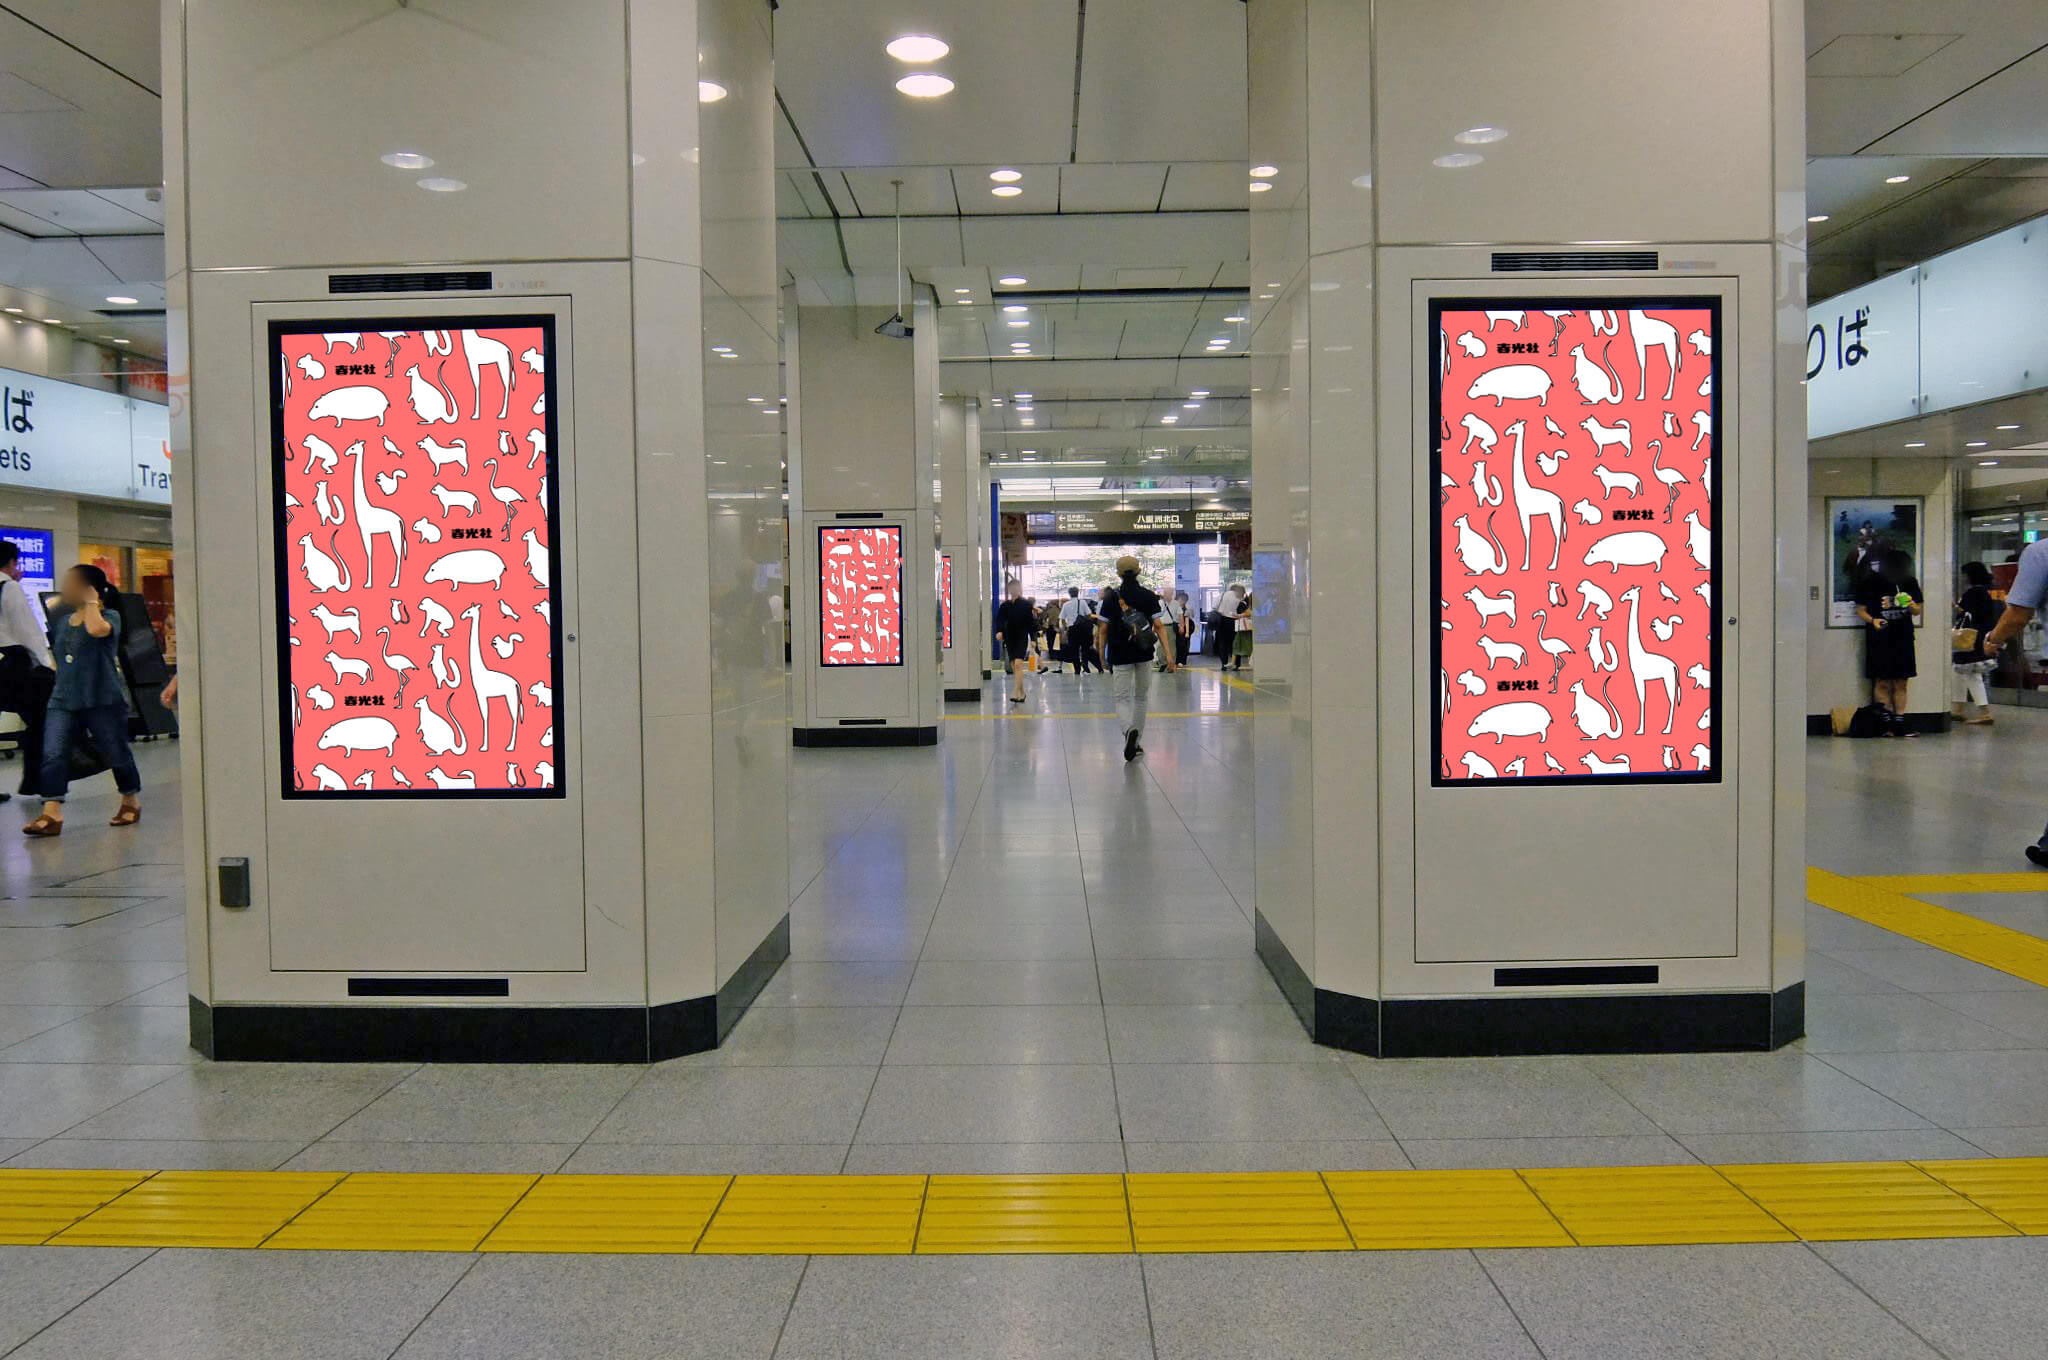 JR東日本東京駅八重洲エリアに設置されている縦型デジタルサイネージ